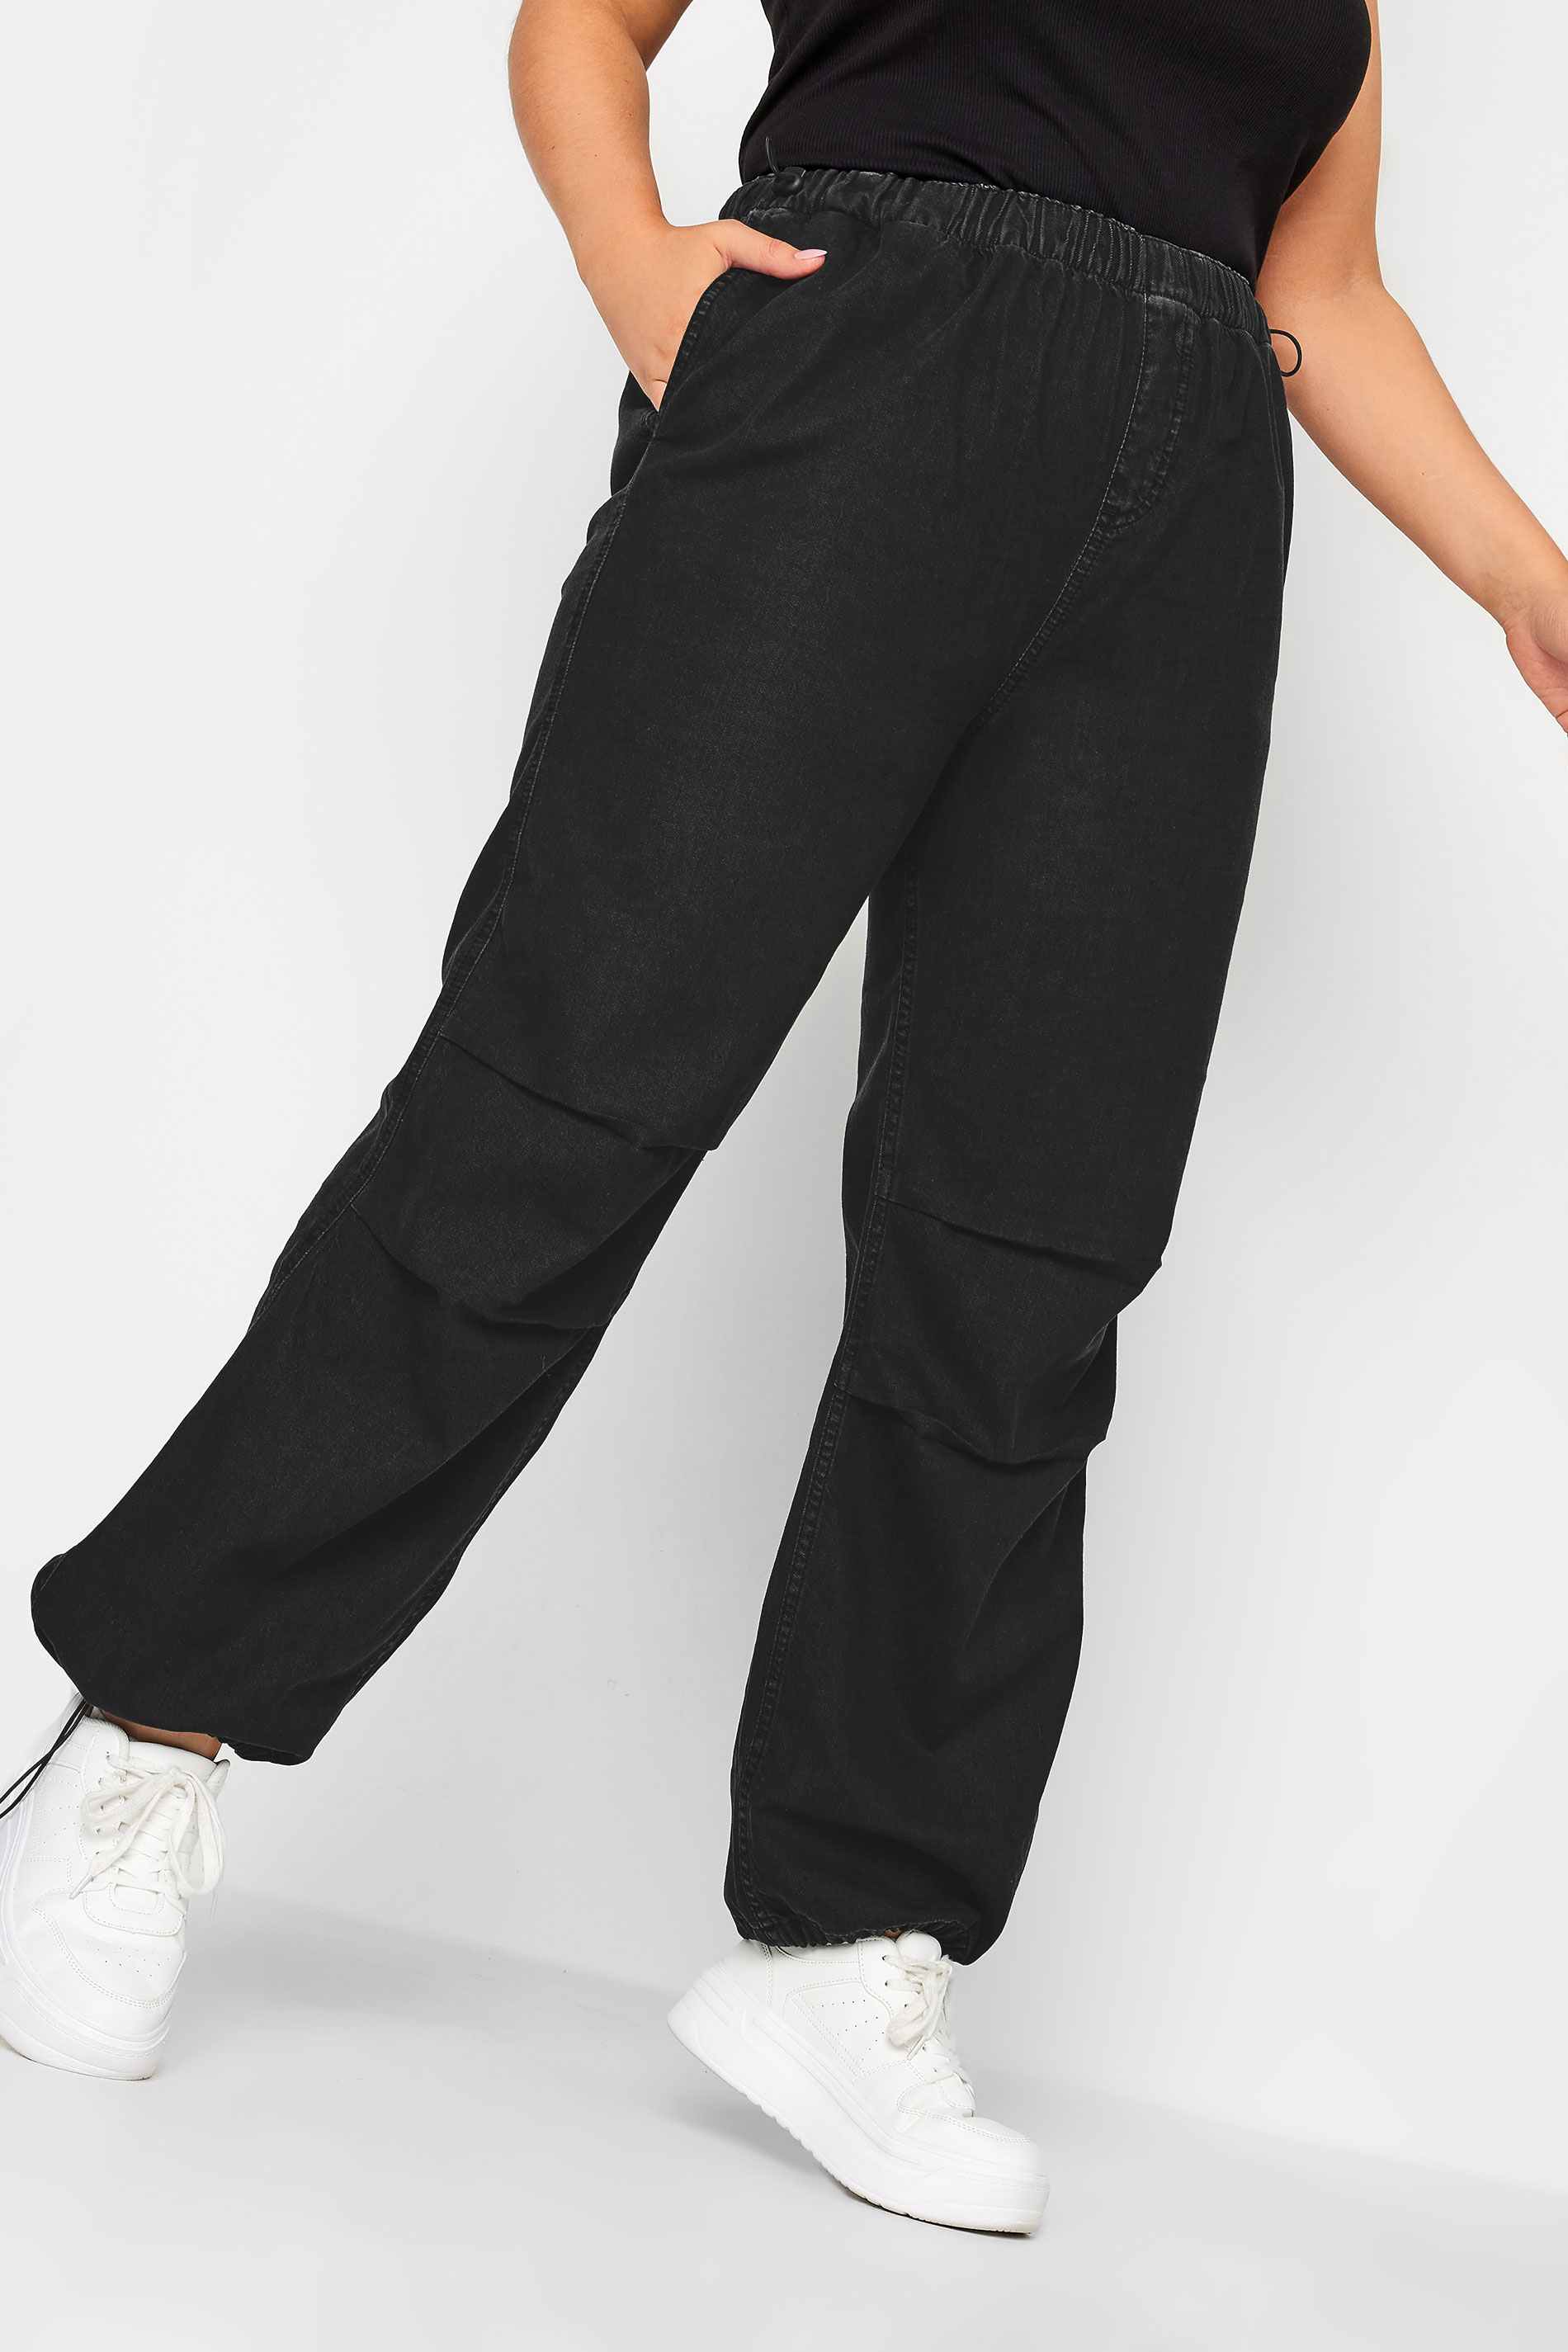 YOURS Plus Size Black Denim Parachute Jeans | Yours Clothing  1